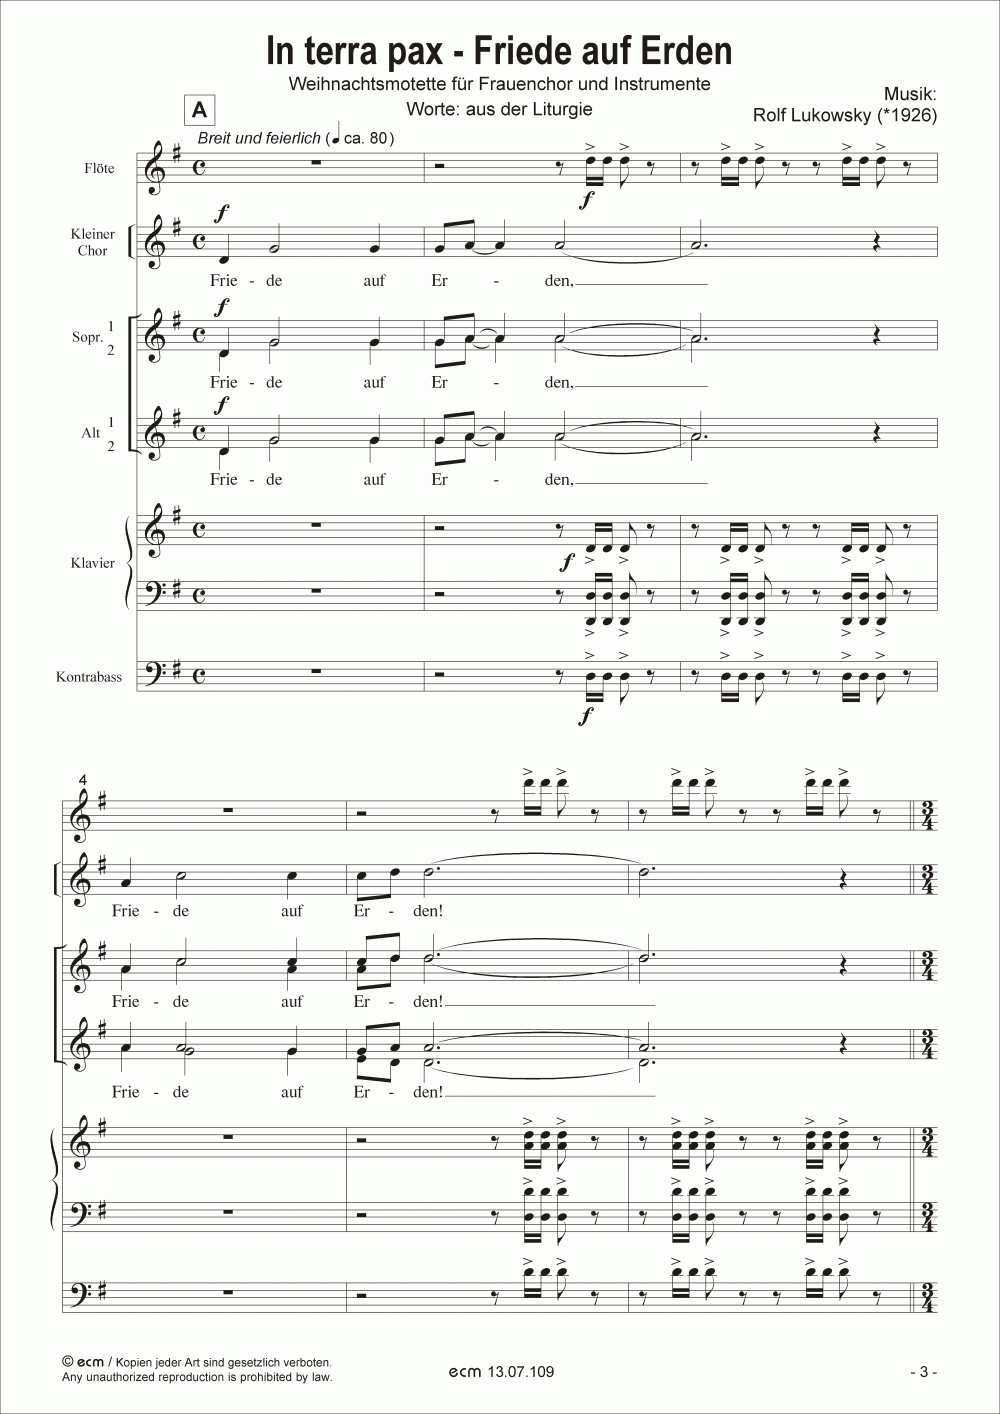 In terra pax - Friede auf Erden (with instruments)